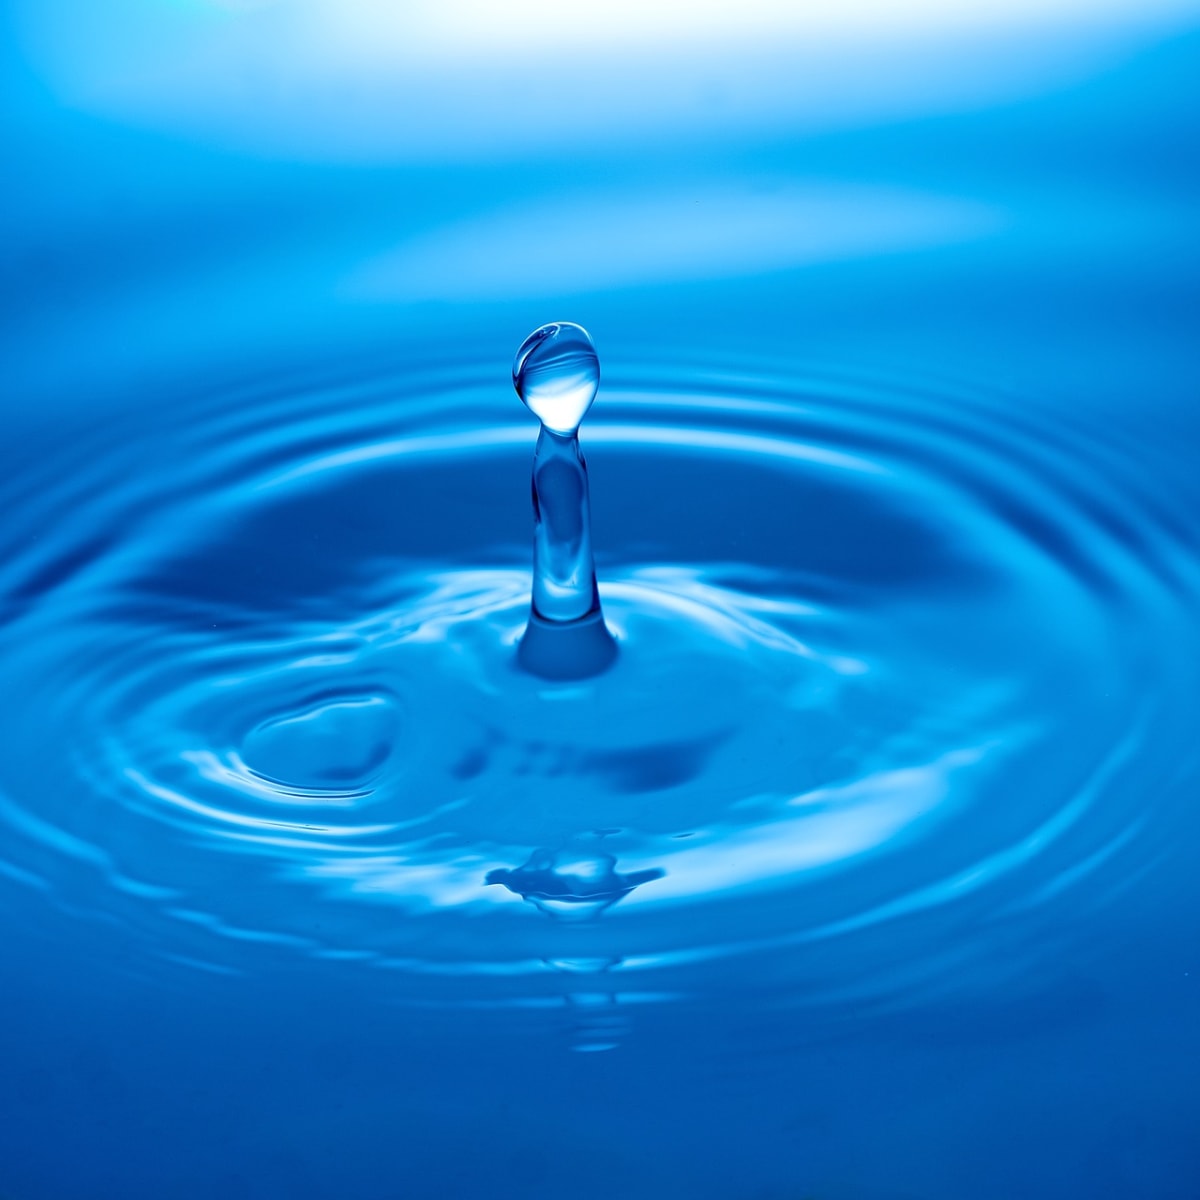 5 Best Water Softener Systems Of 2021 | Men's Journal - Men's Journal